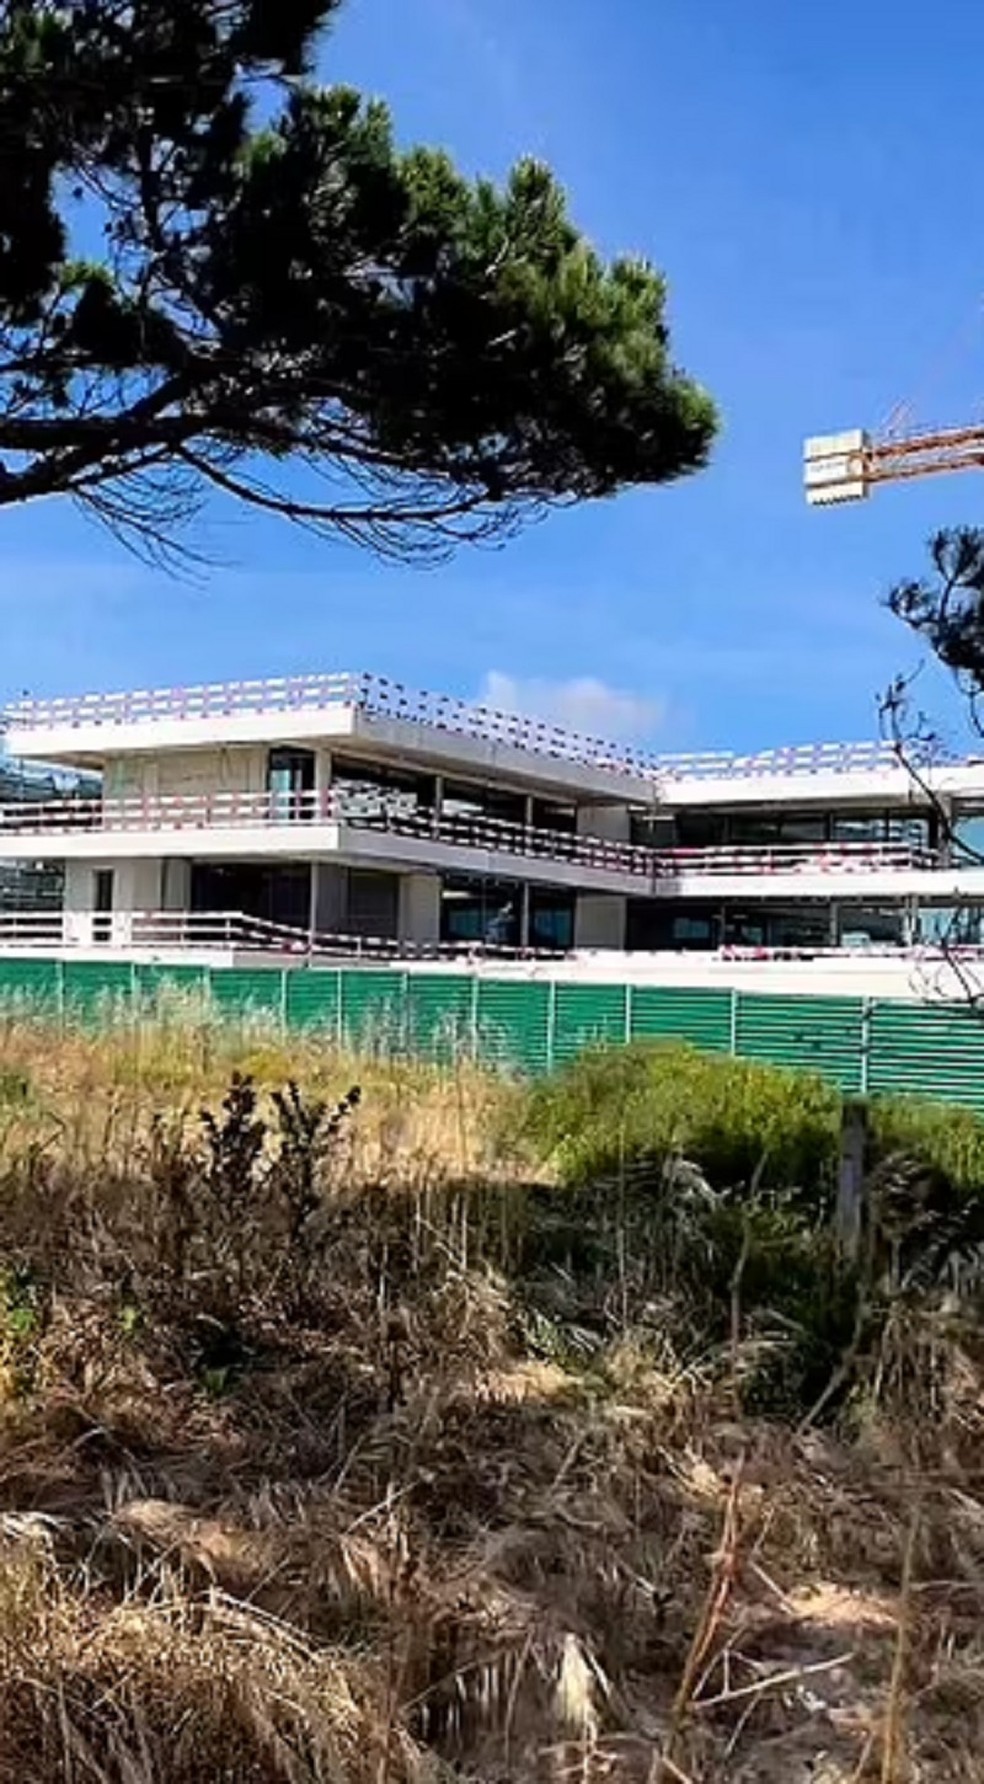 Obra atrasada na nova mansão de Cristiano Ronaldo incomoda vizinhos — Foto: Reprodução/Instagram